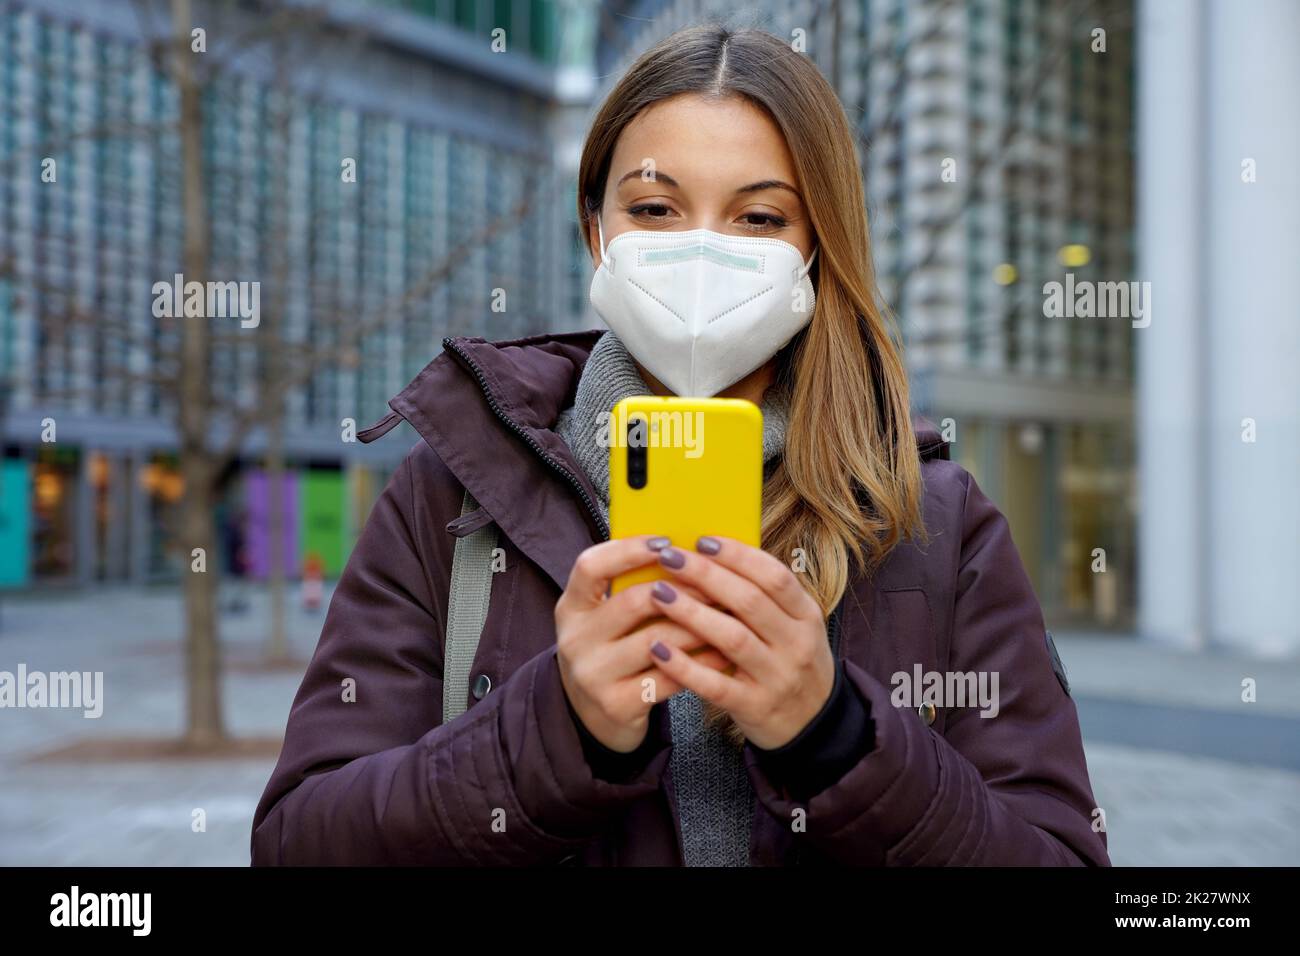 Vue de face de la femme d'hiver avec FFP2 KN95 masque de protection discutant avec un smartphone dans la rue de la ville Banque D'Images